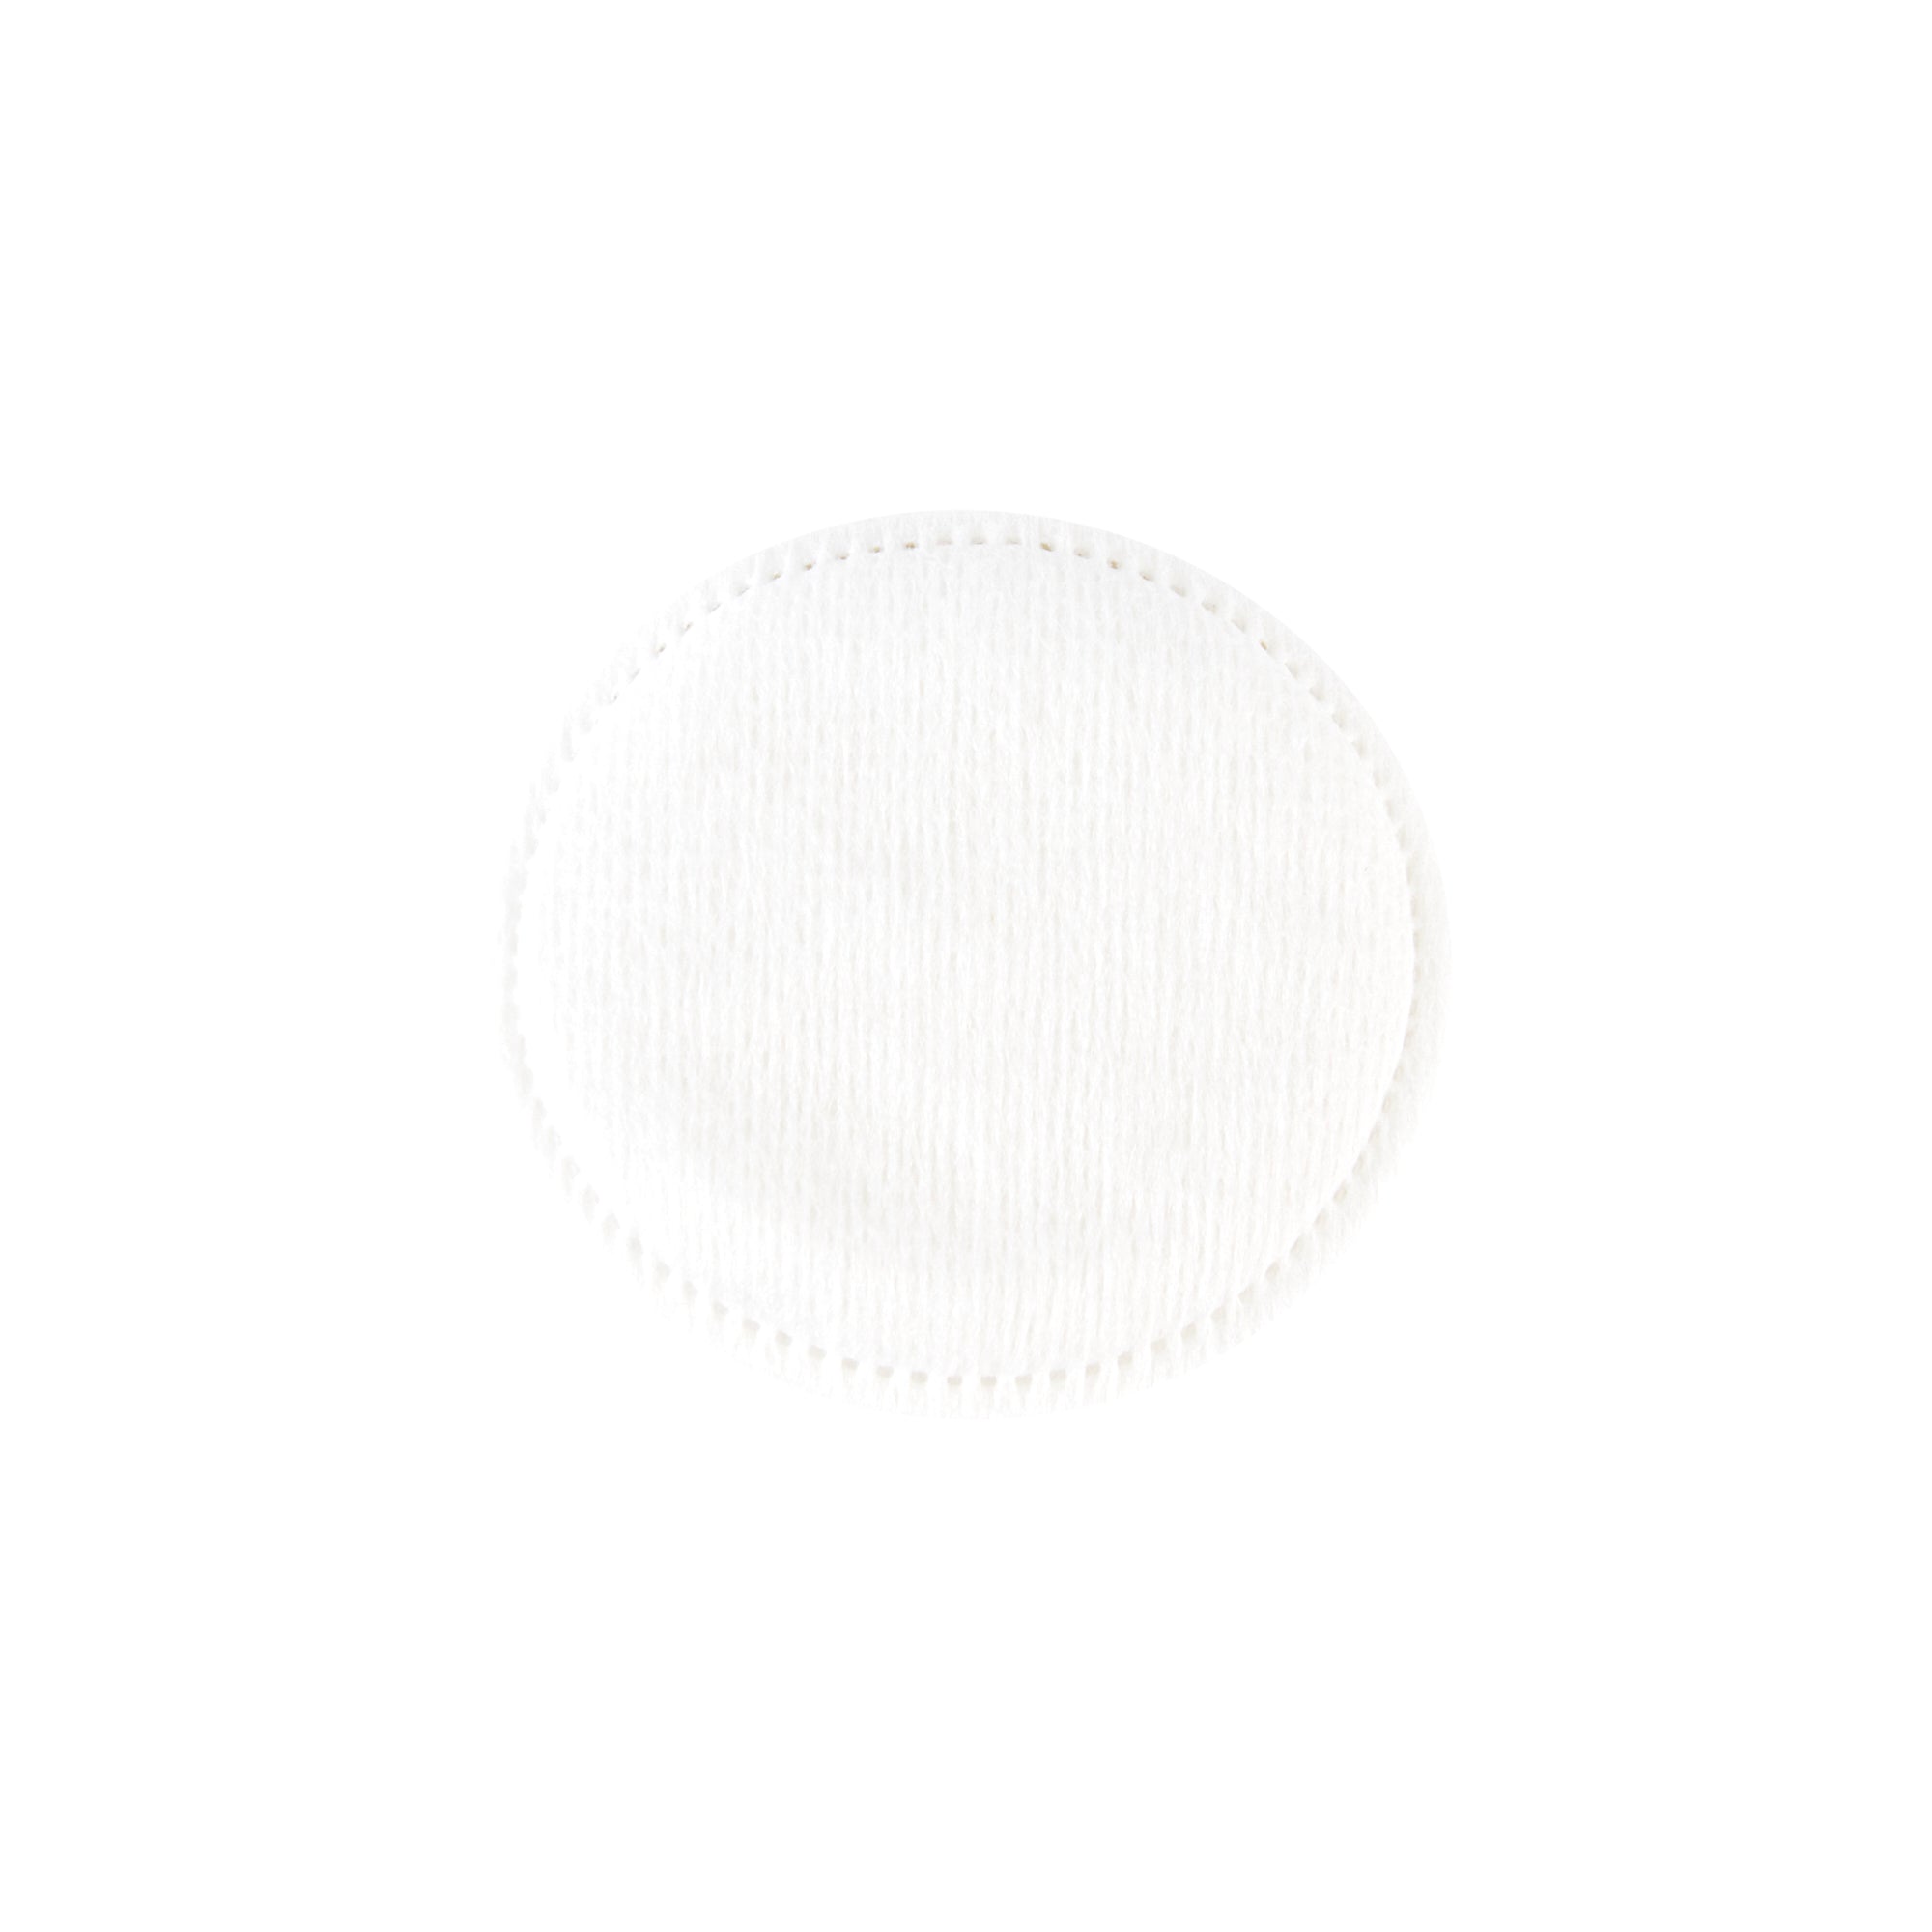 Hello Kitty Chic Large Reusable Jar + Premium Cotton Pads Cotton Pads - The Crème Shop x Sanrio 